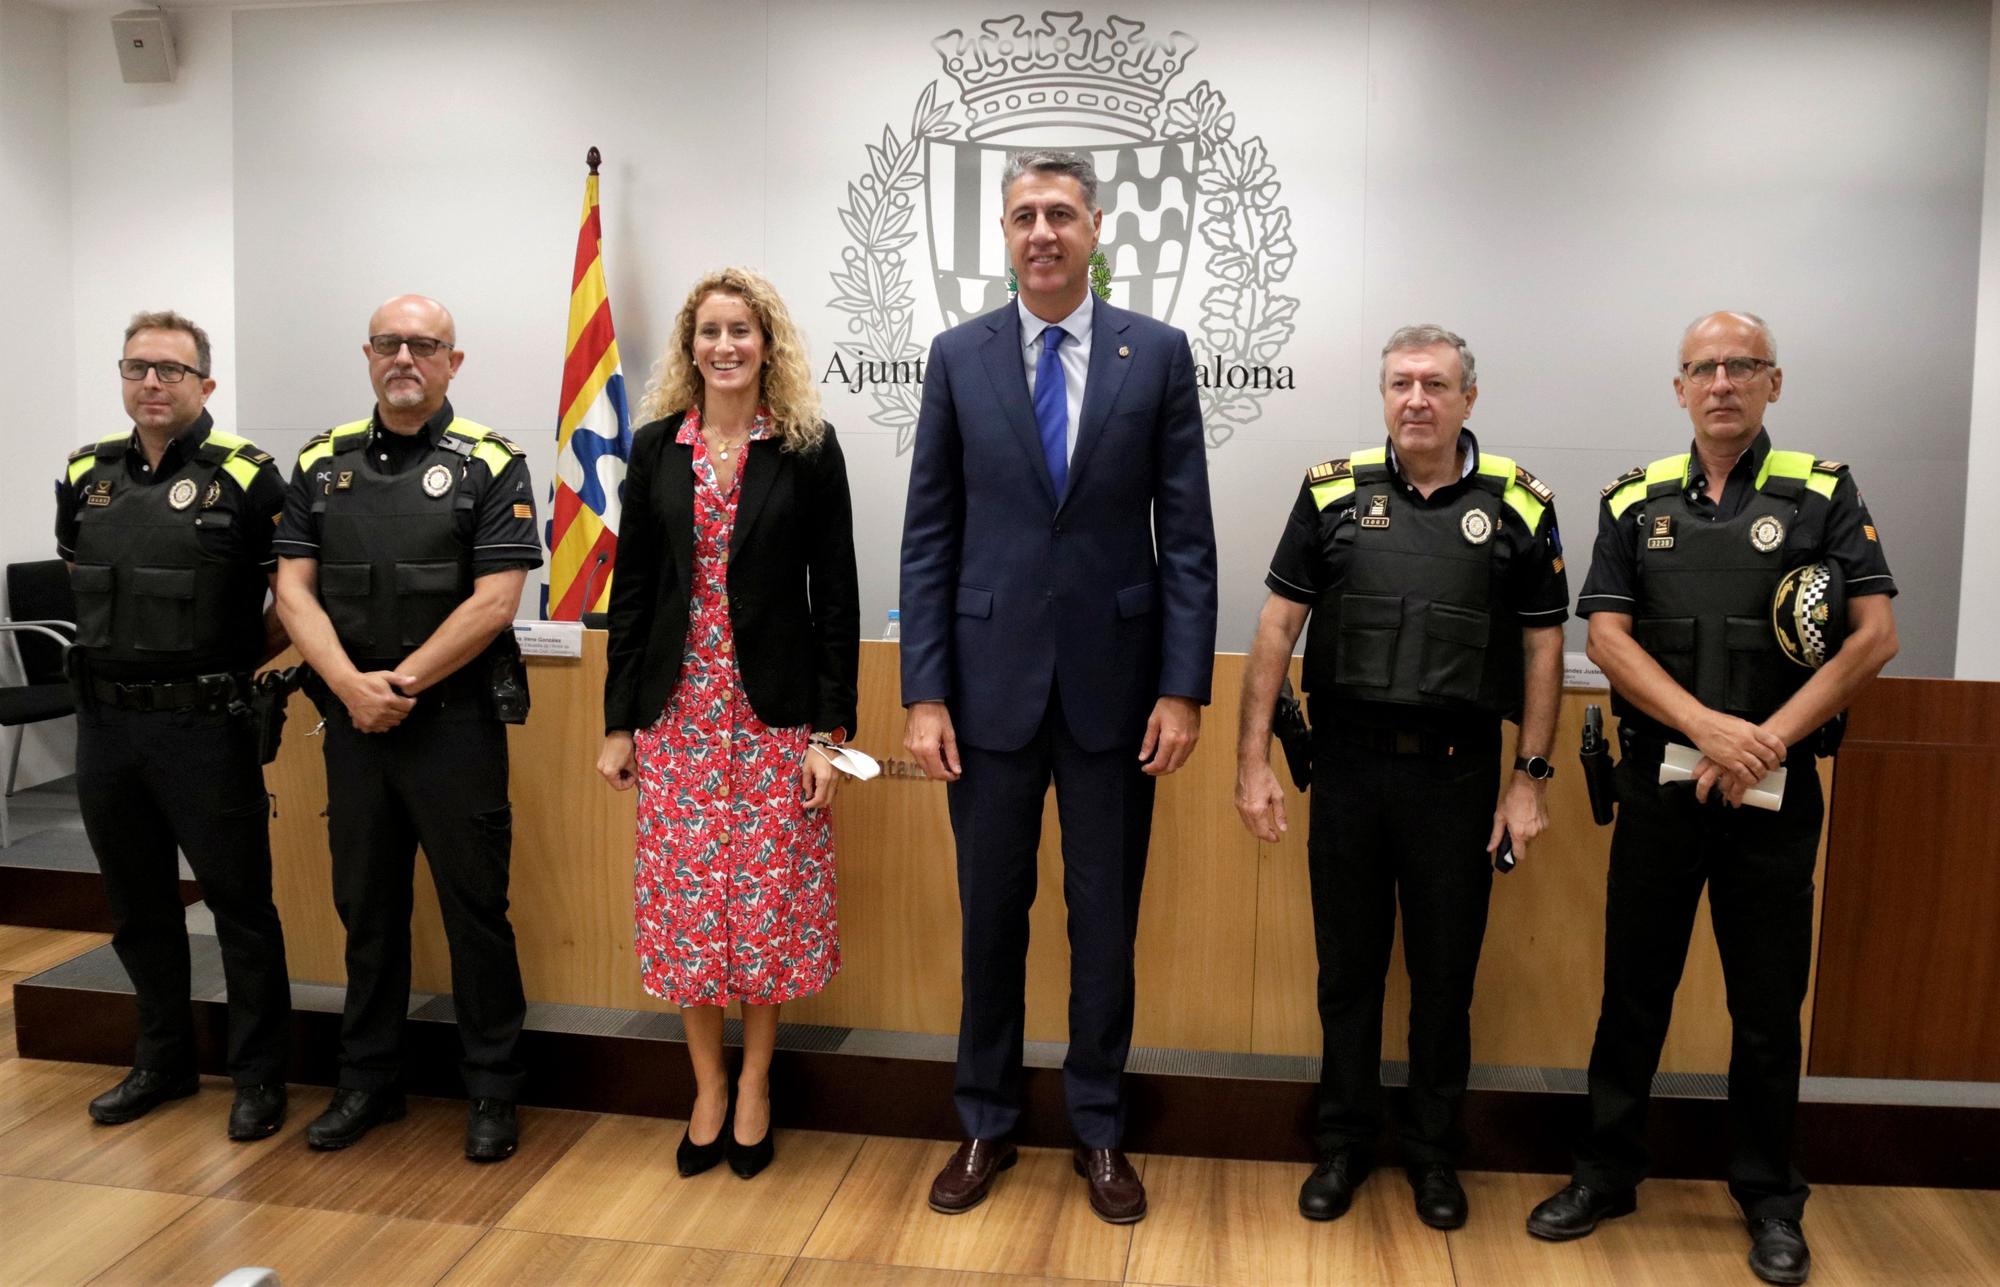 El alcalde de Badalona, Xavier Garcia Albiol, y la concejala de Seguridad, Irene González, con mandos de la Guardia Urbana